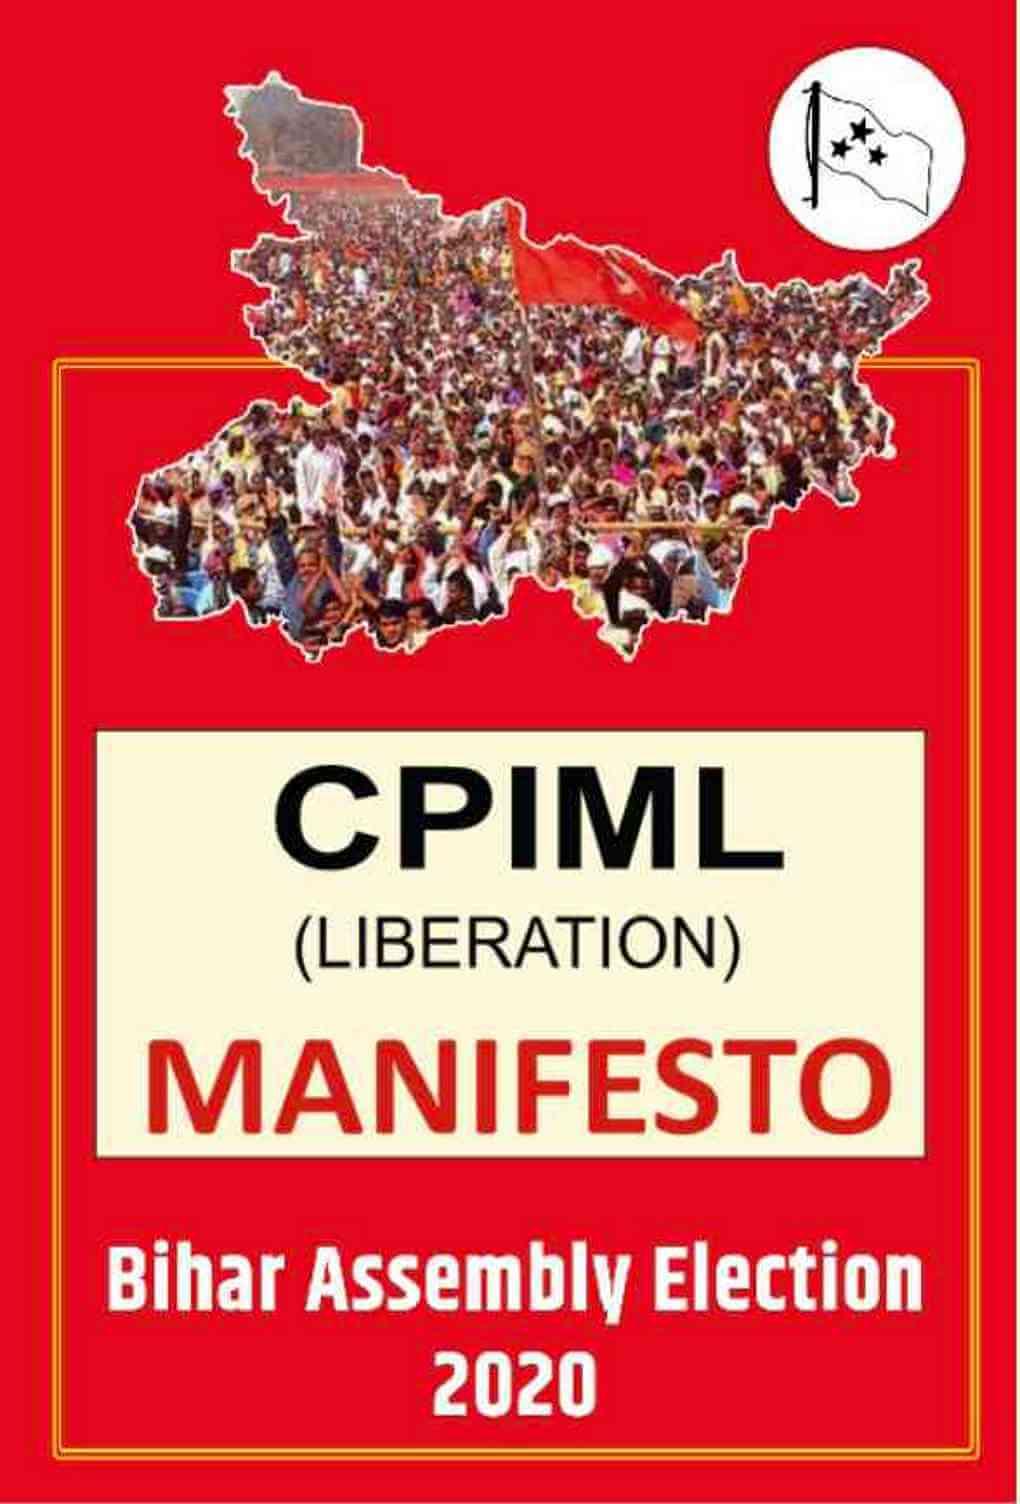 cpiml manifesto